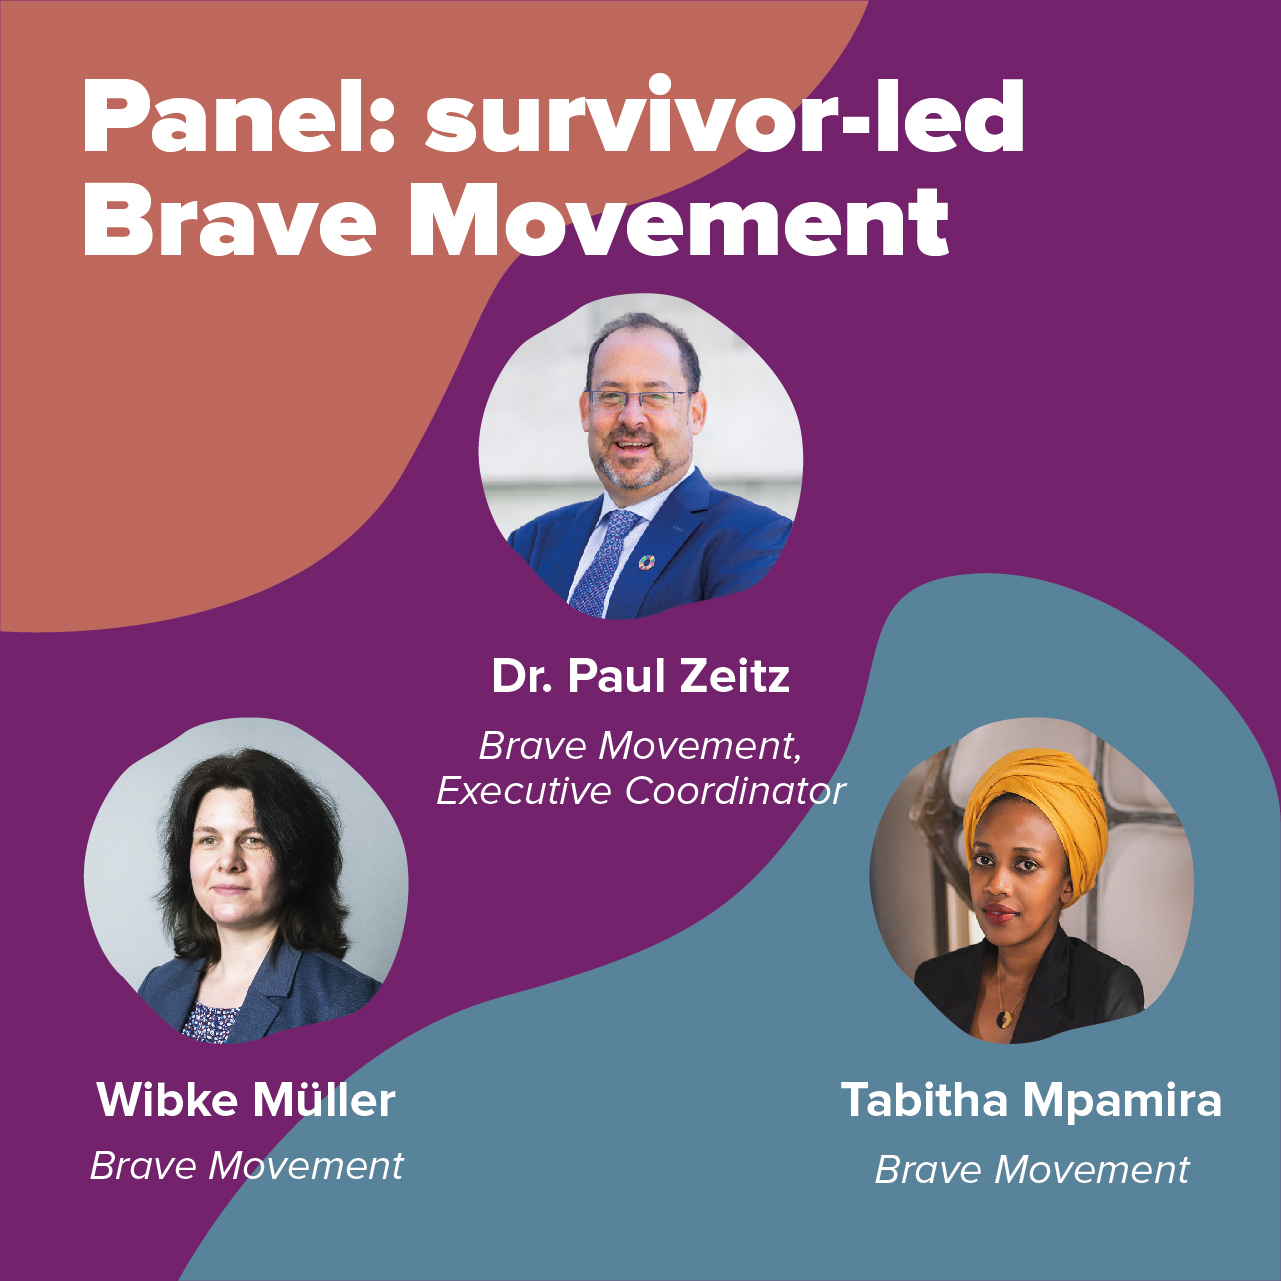 Panel: survivor-led Brave Movement